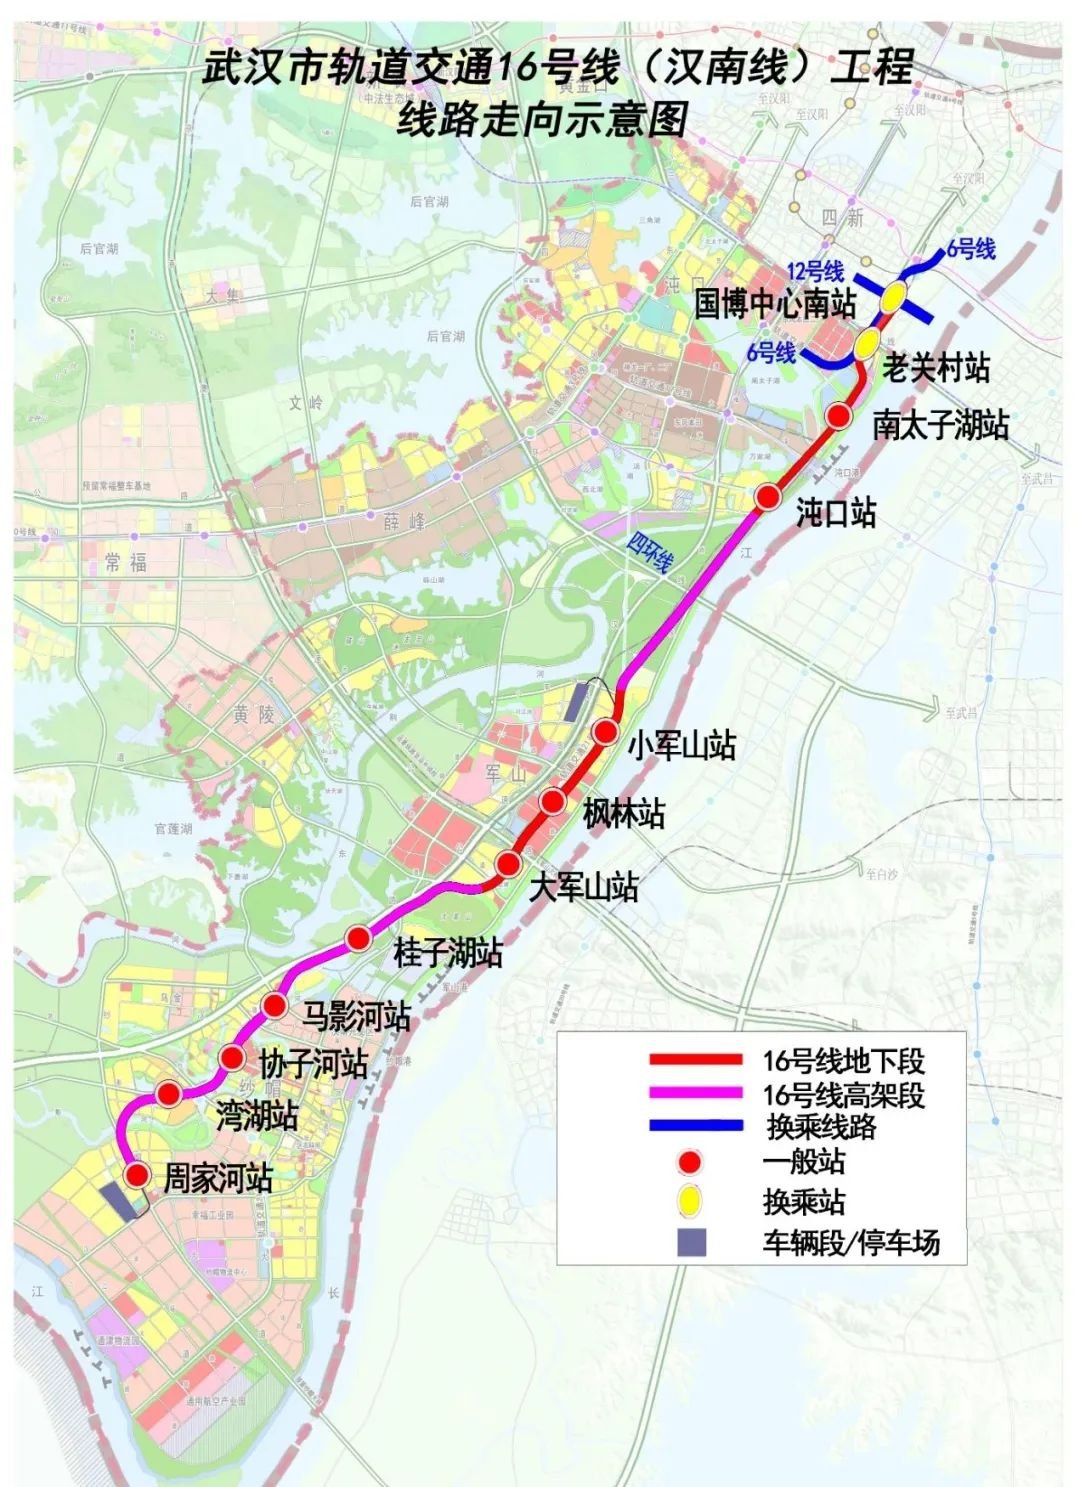 两湖隧道东湖段,武昌生态文化长廊,友谊大道快速化改造工程等40项续建